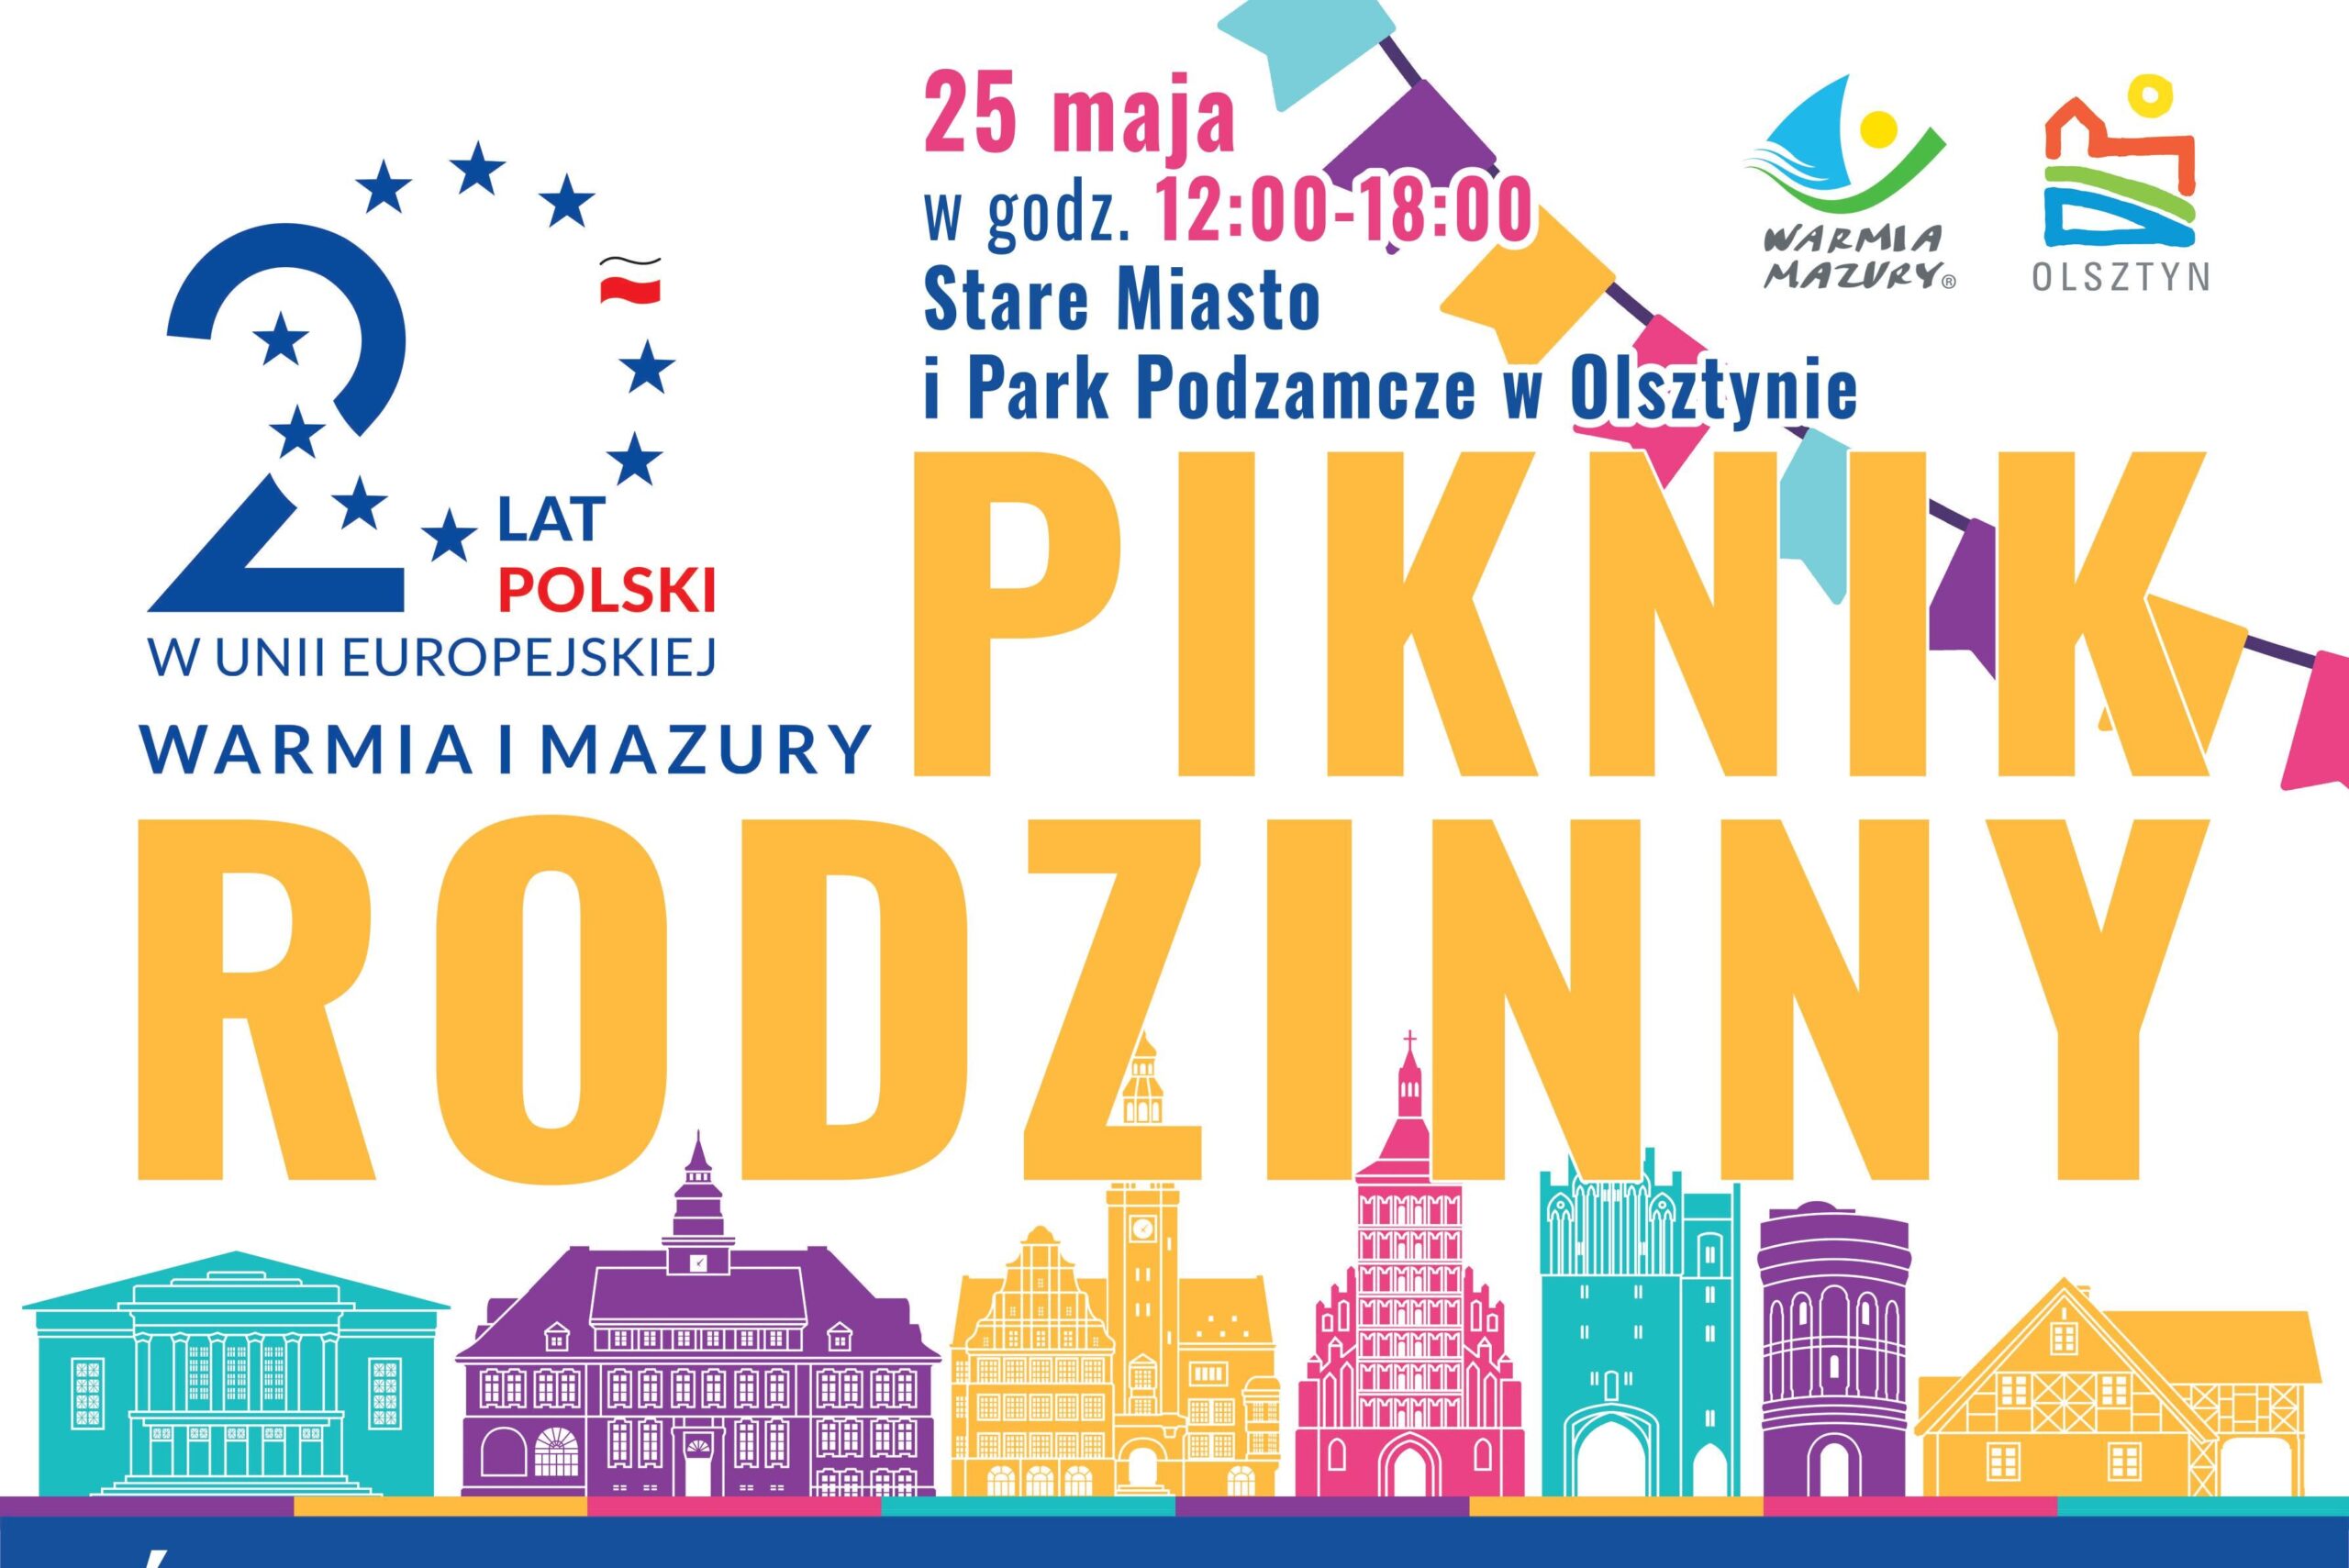 Piknik rodzinny z okazji jubileuszu 20-lecia przystąpienia Polski do Unii Europejskiej!